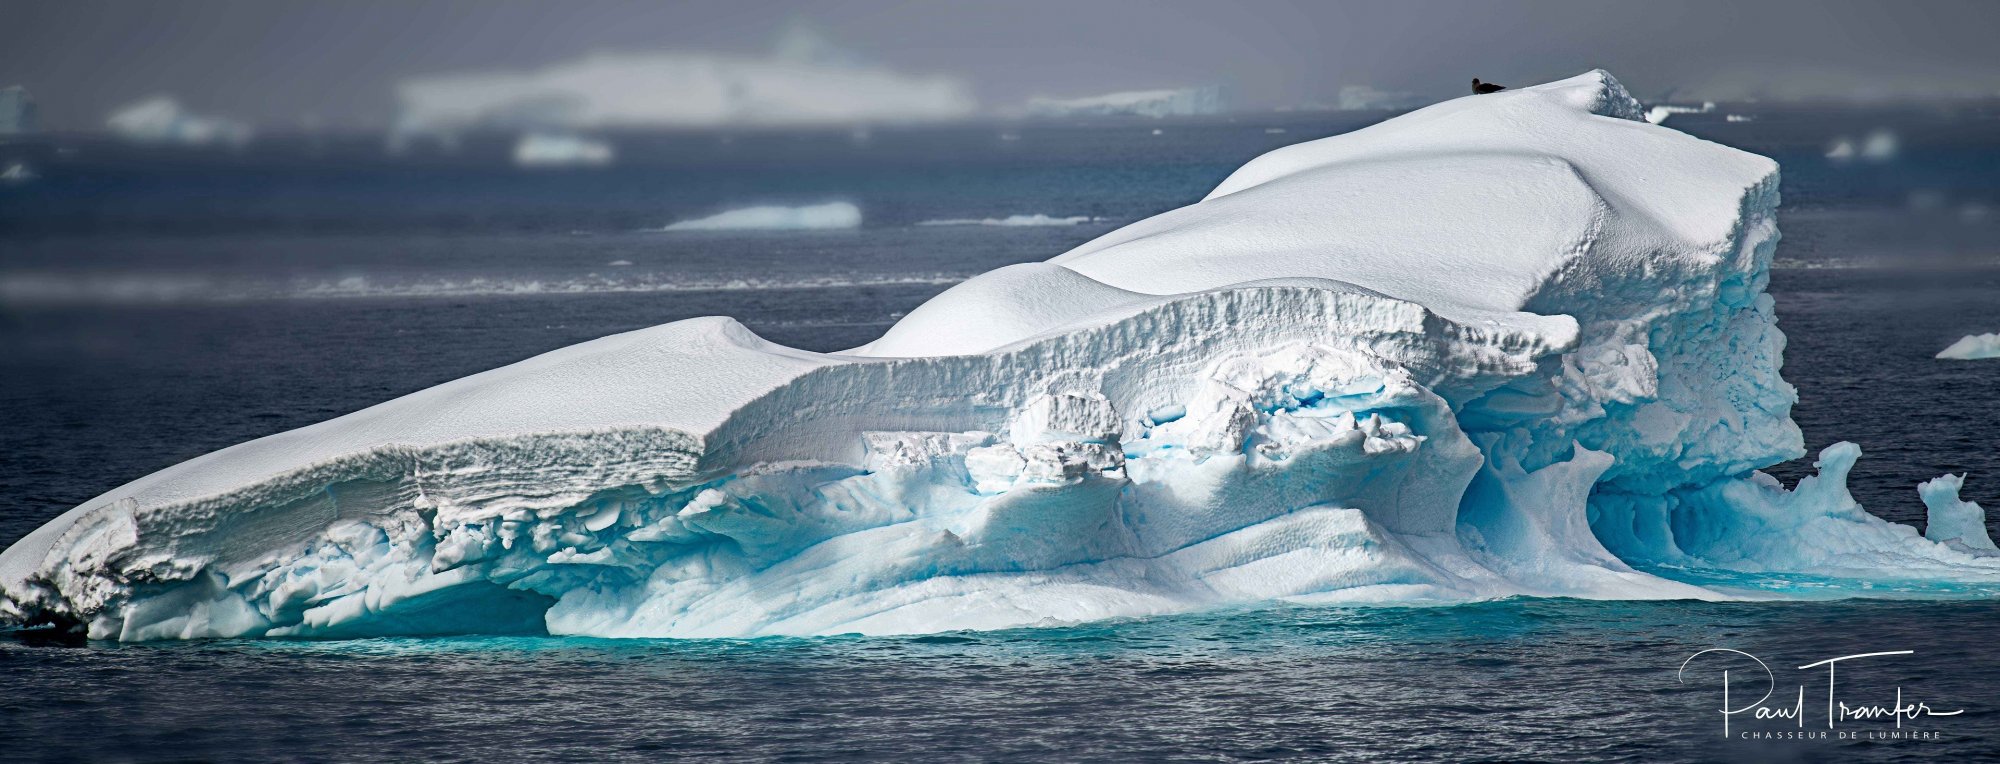 bird-on-an-iceberg.jpg